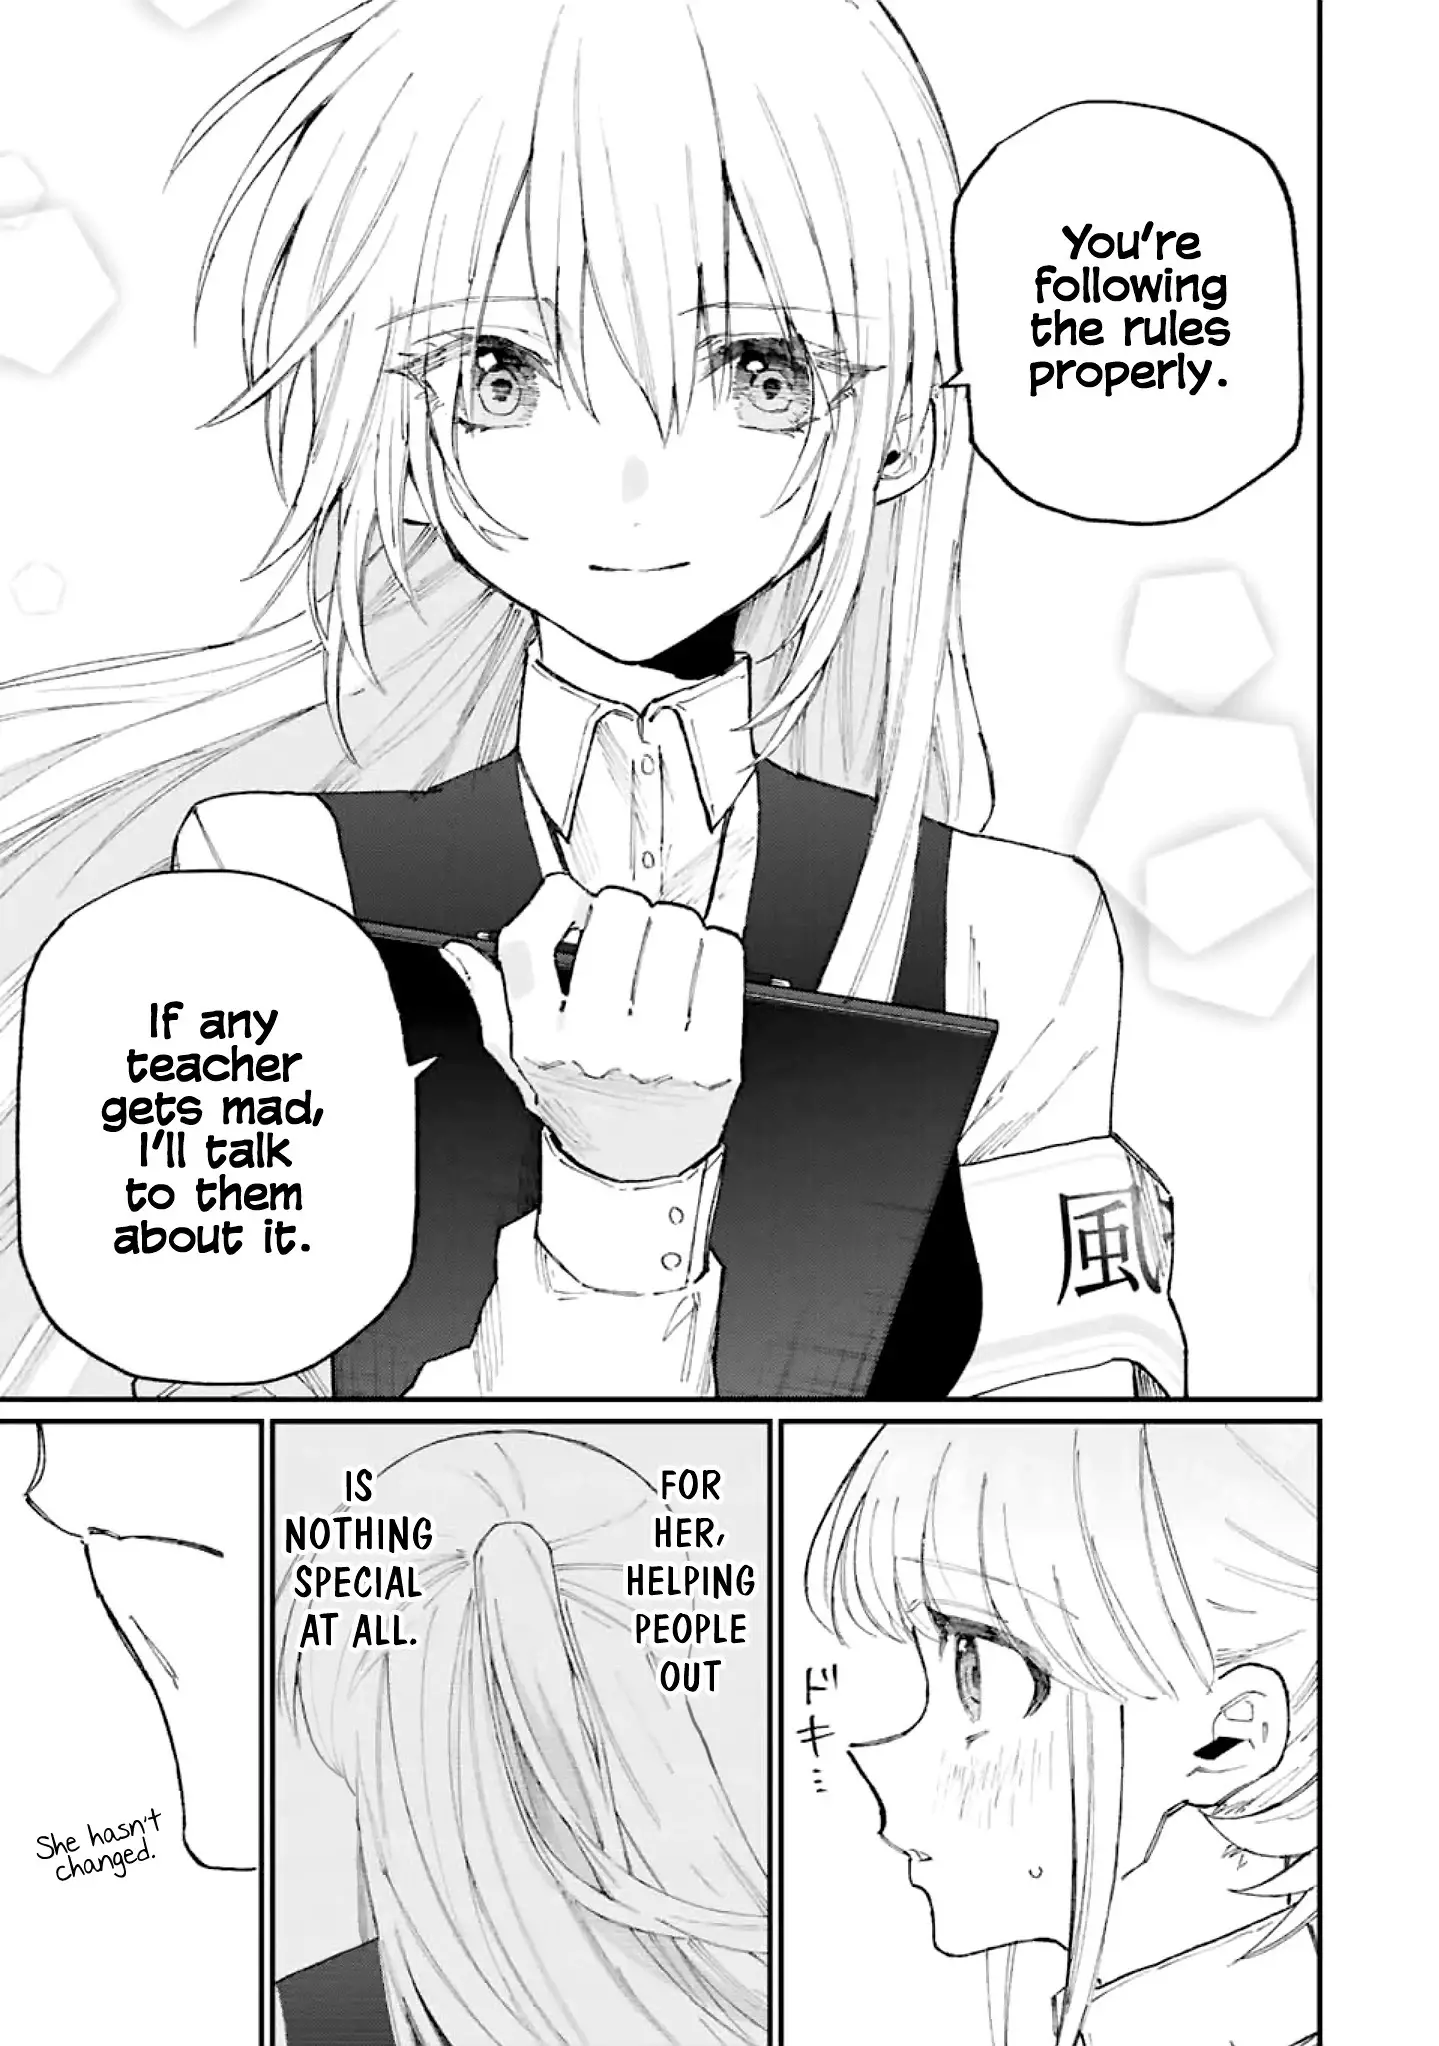 Shikimori's Not Just A Cutie - 132 page 12